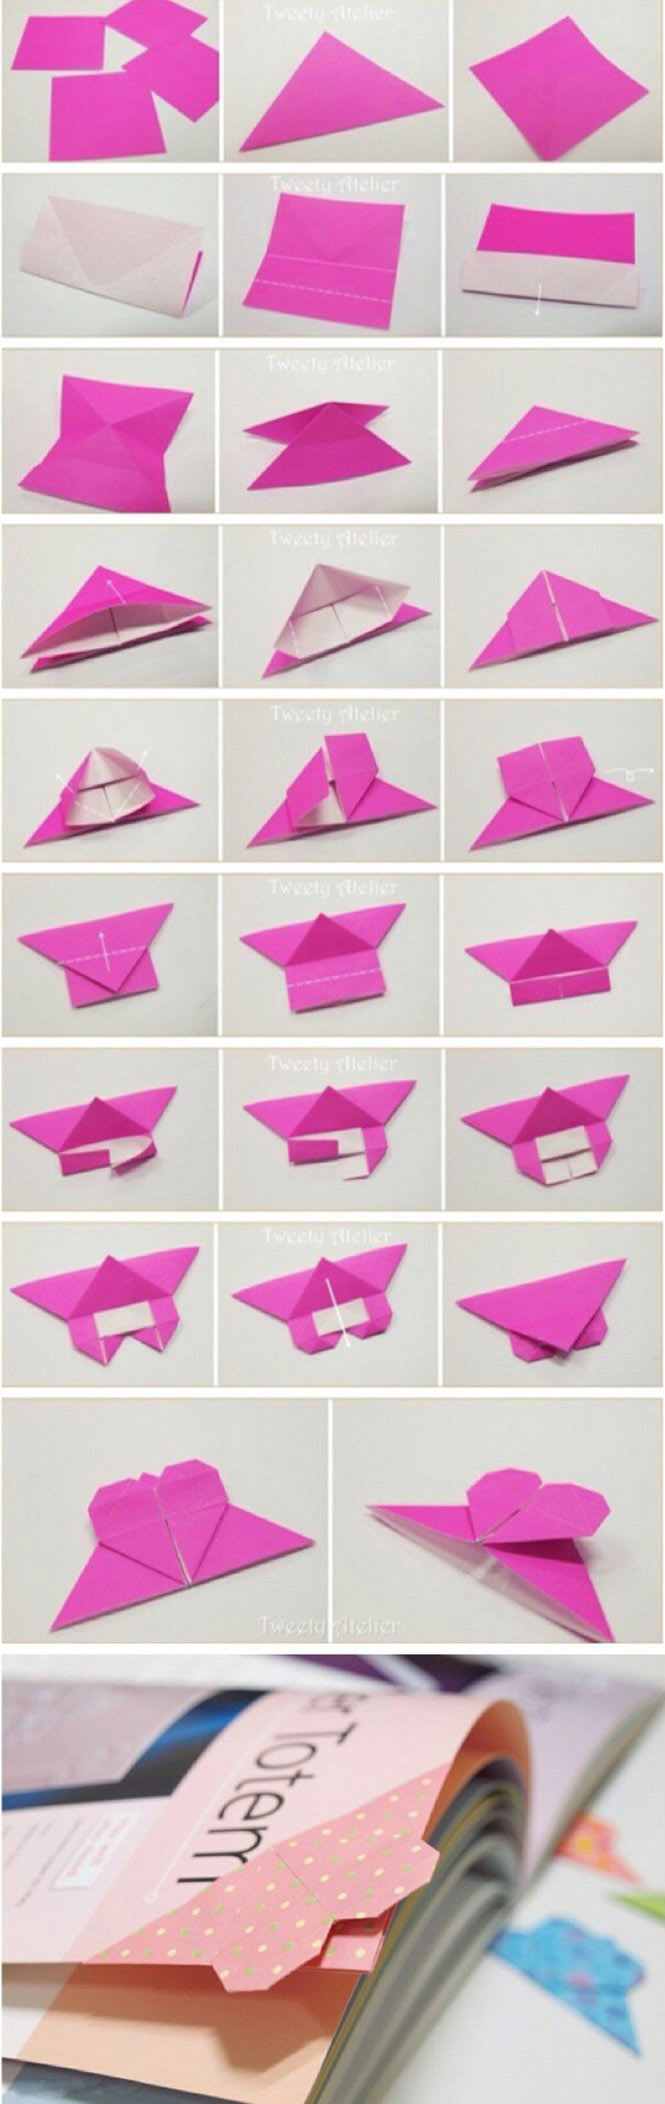 简单折纸DIY漂亮爱心形书签的折法图解教程-www.qqscb.com